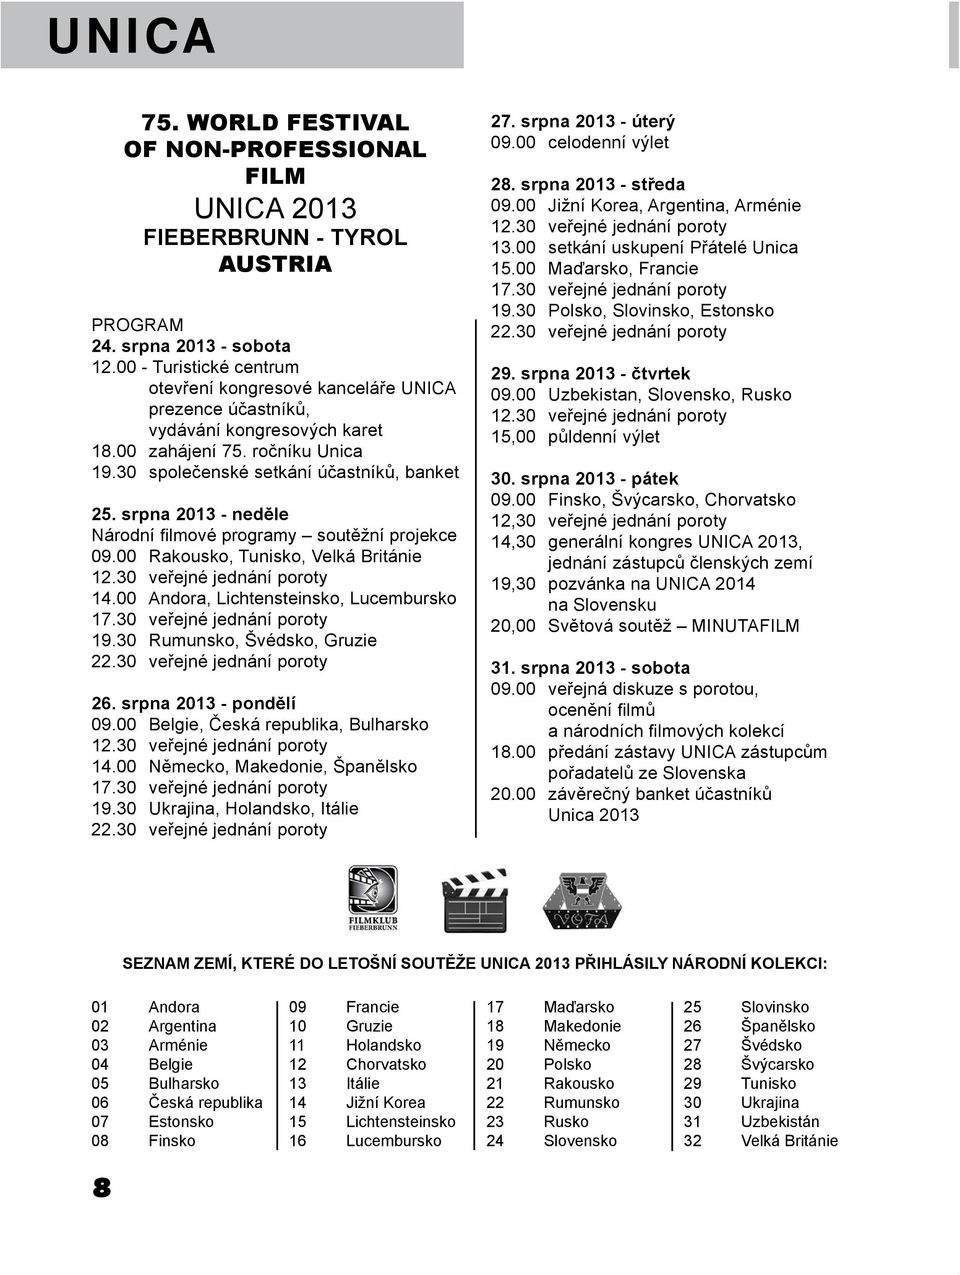 srpna 2013 - neděle Národní filmové programy soutěžní projekce 09.00 Rakousko, Tunisko, Velká Británie 12.30 veřejné jednání poroty 14.00 Andora, Lichtensteinsko, Lucembursko 17.